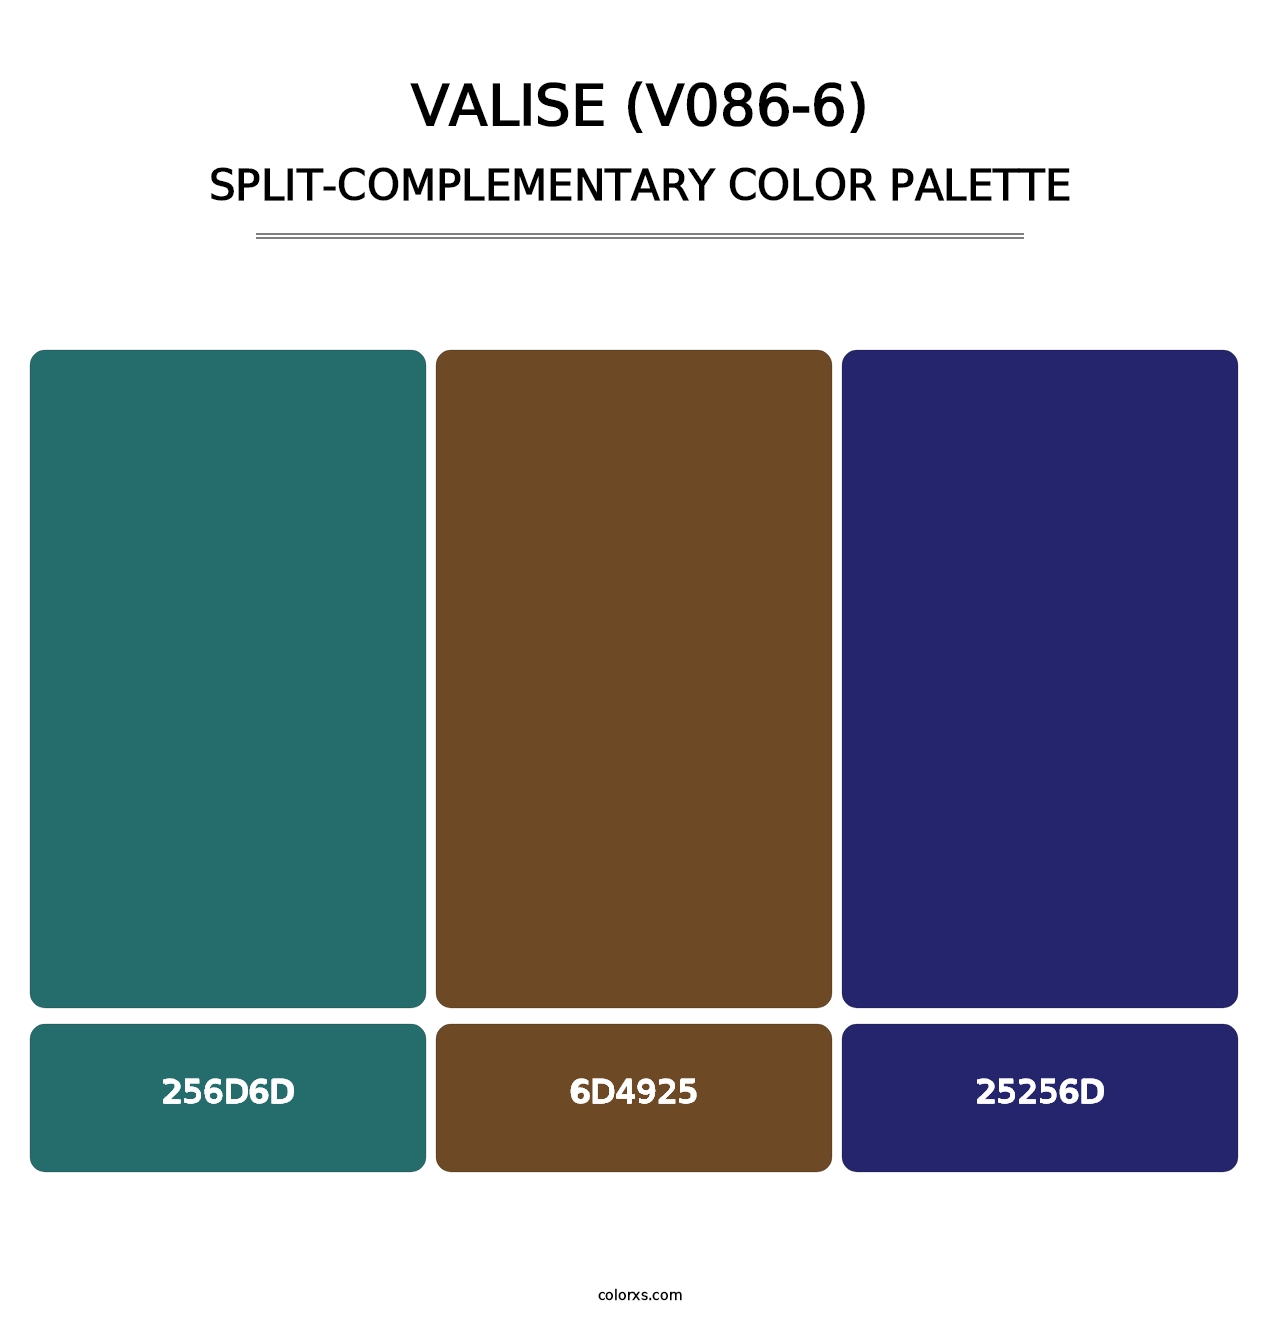 Valise (V086-6) - Split-Complementary Color Palette